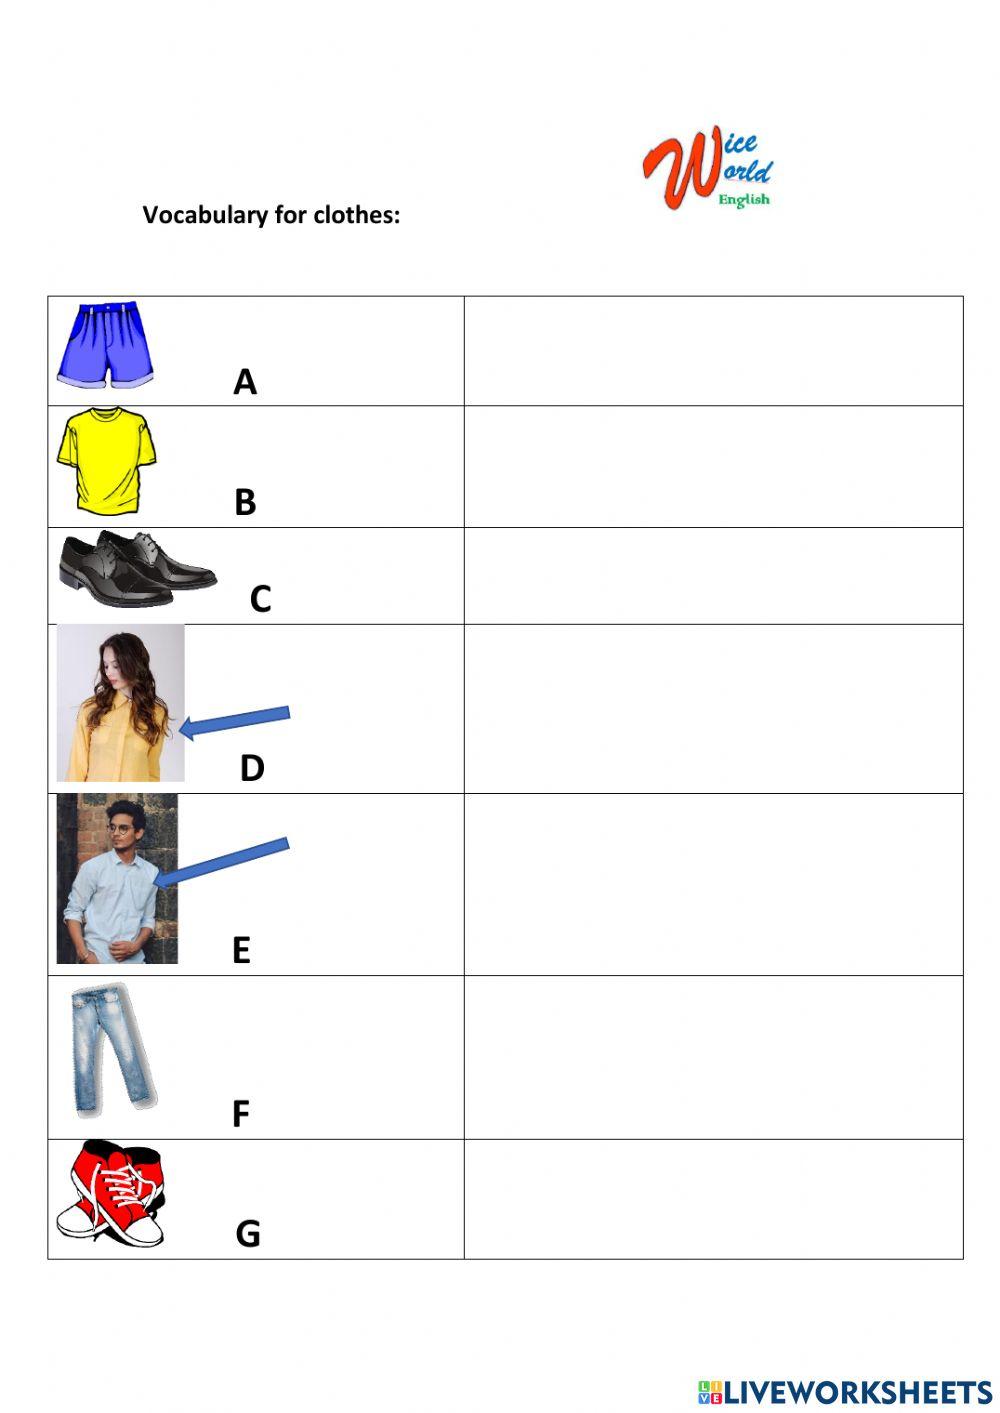 Vocabulary for clothes